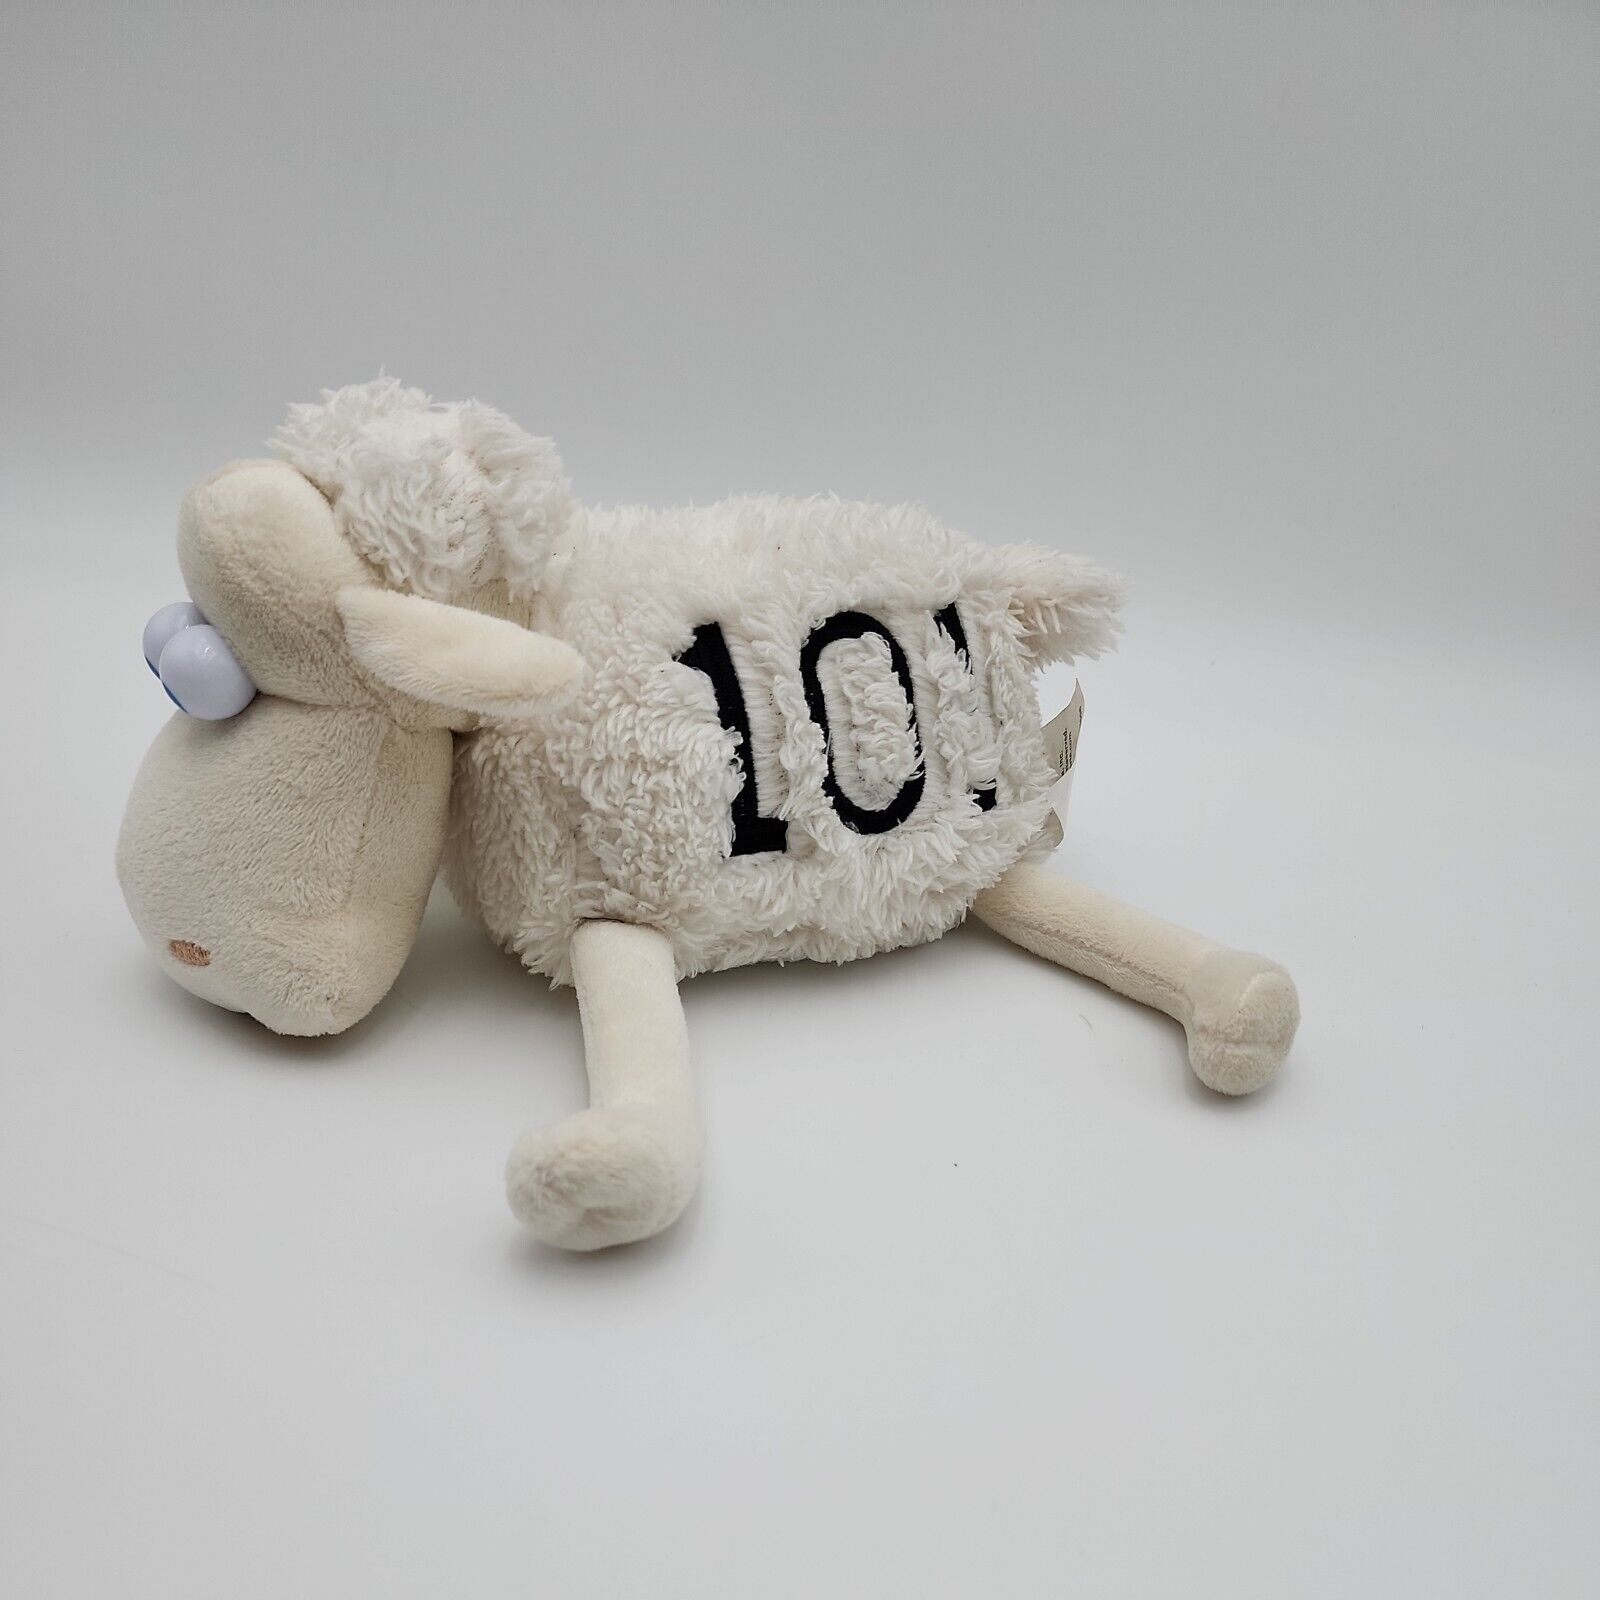 Serta Sleep Number Sheep Lamb Number 101 Stuffed Plush Animal 8\